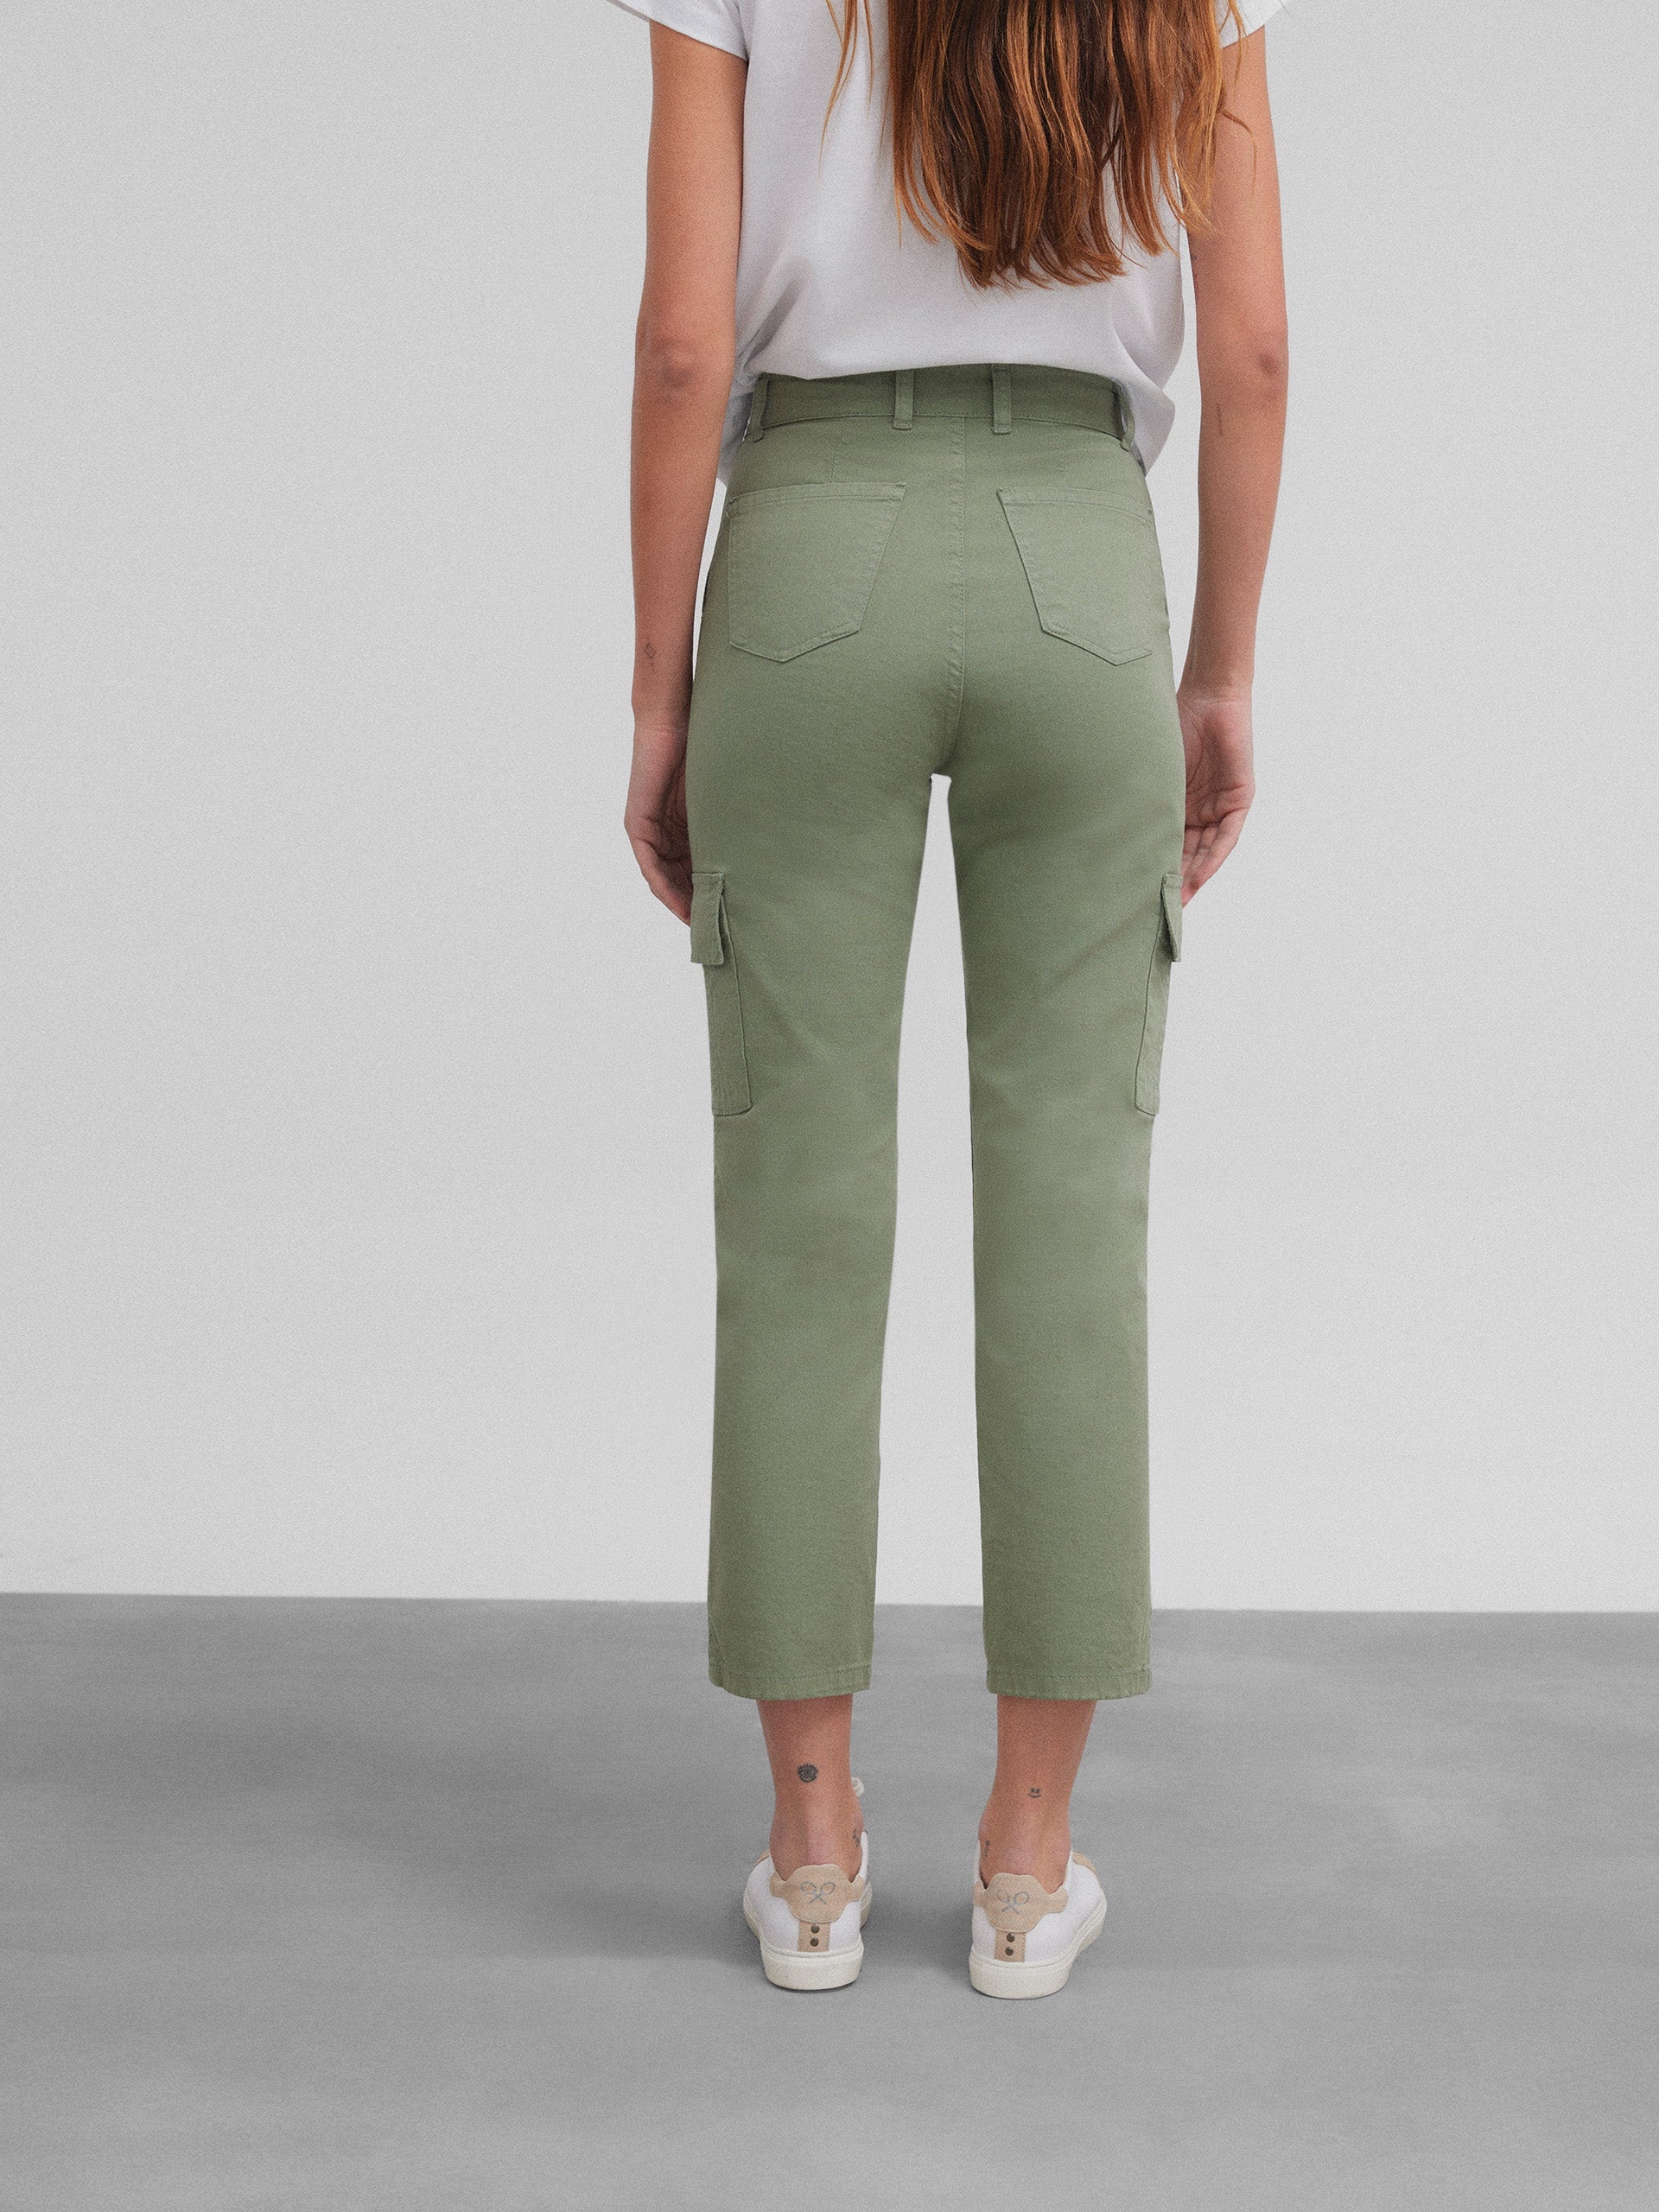 Women's khaki cargo denim pants